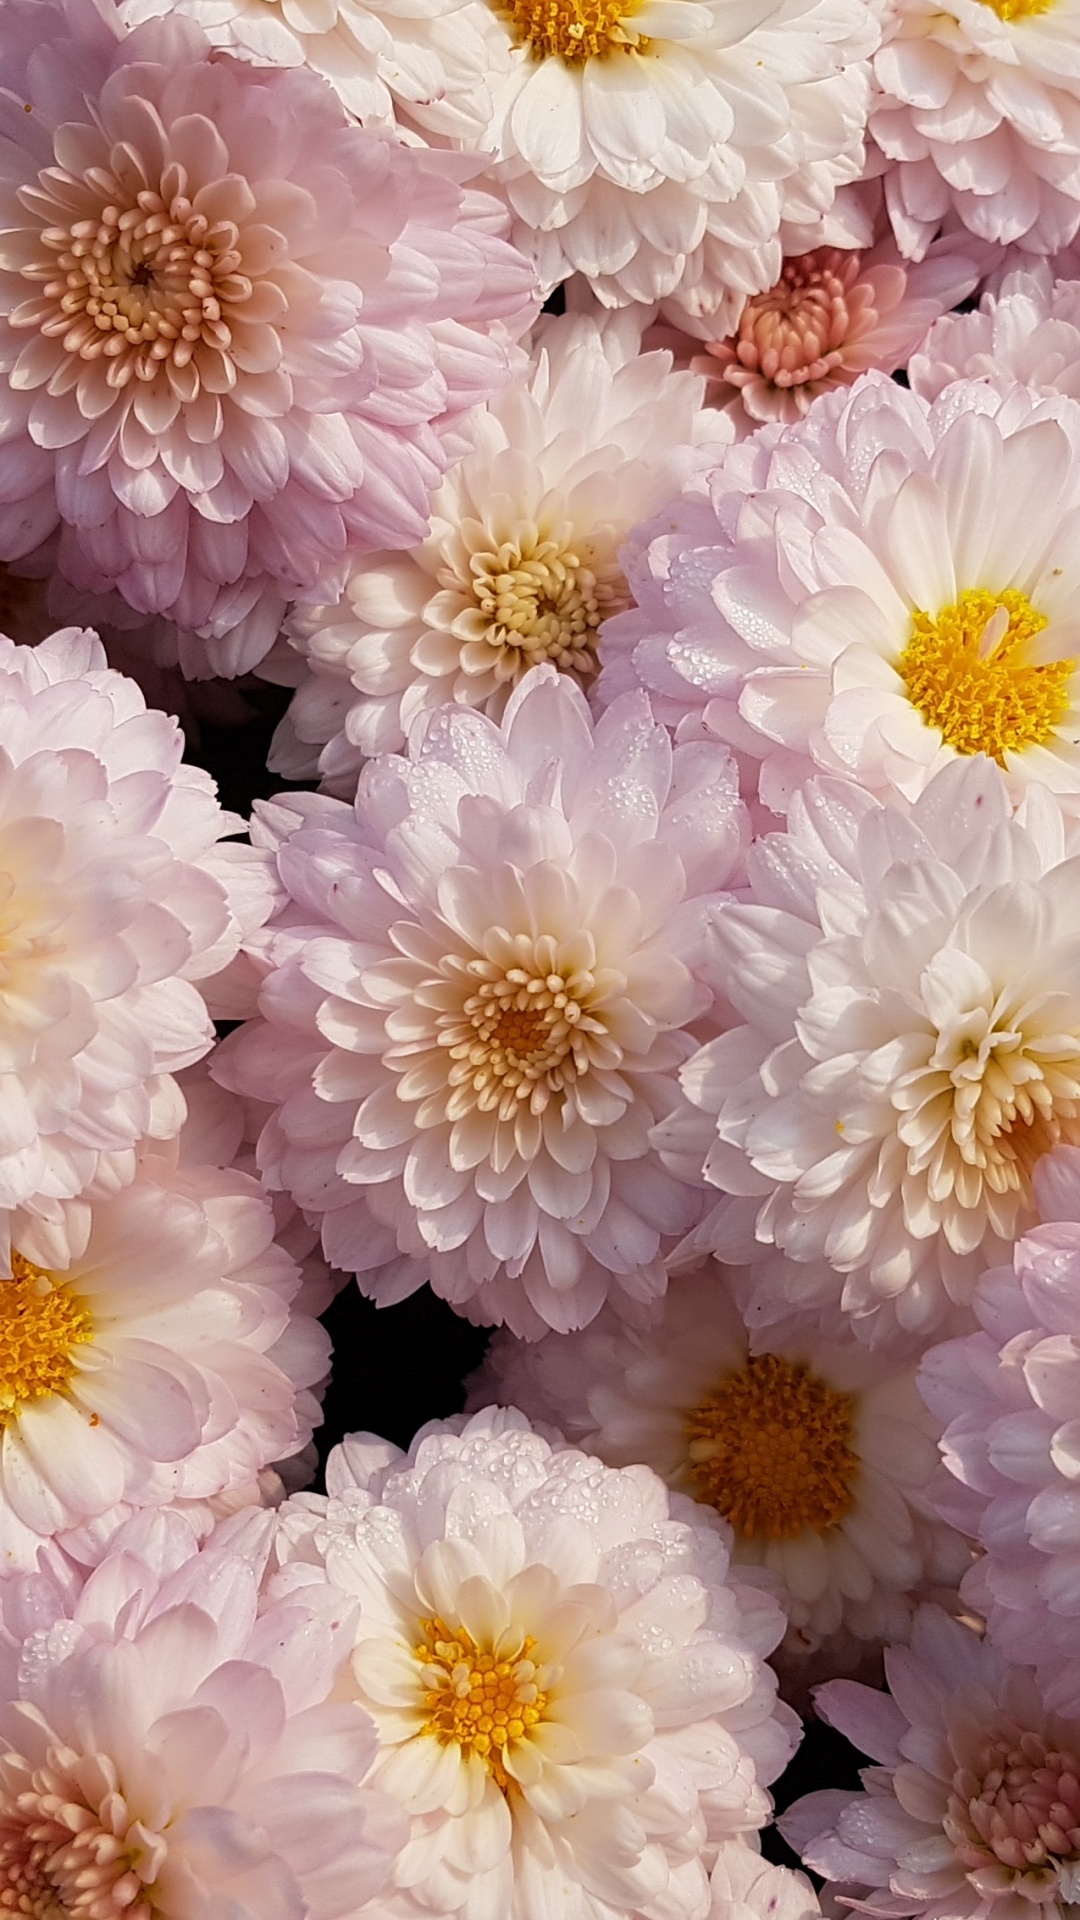 Fleurs Blanches et Violettes en Photographie Rapprochée. Wallpaper in 1080x1920 Resolution